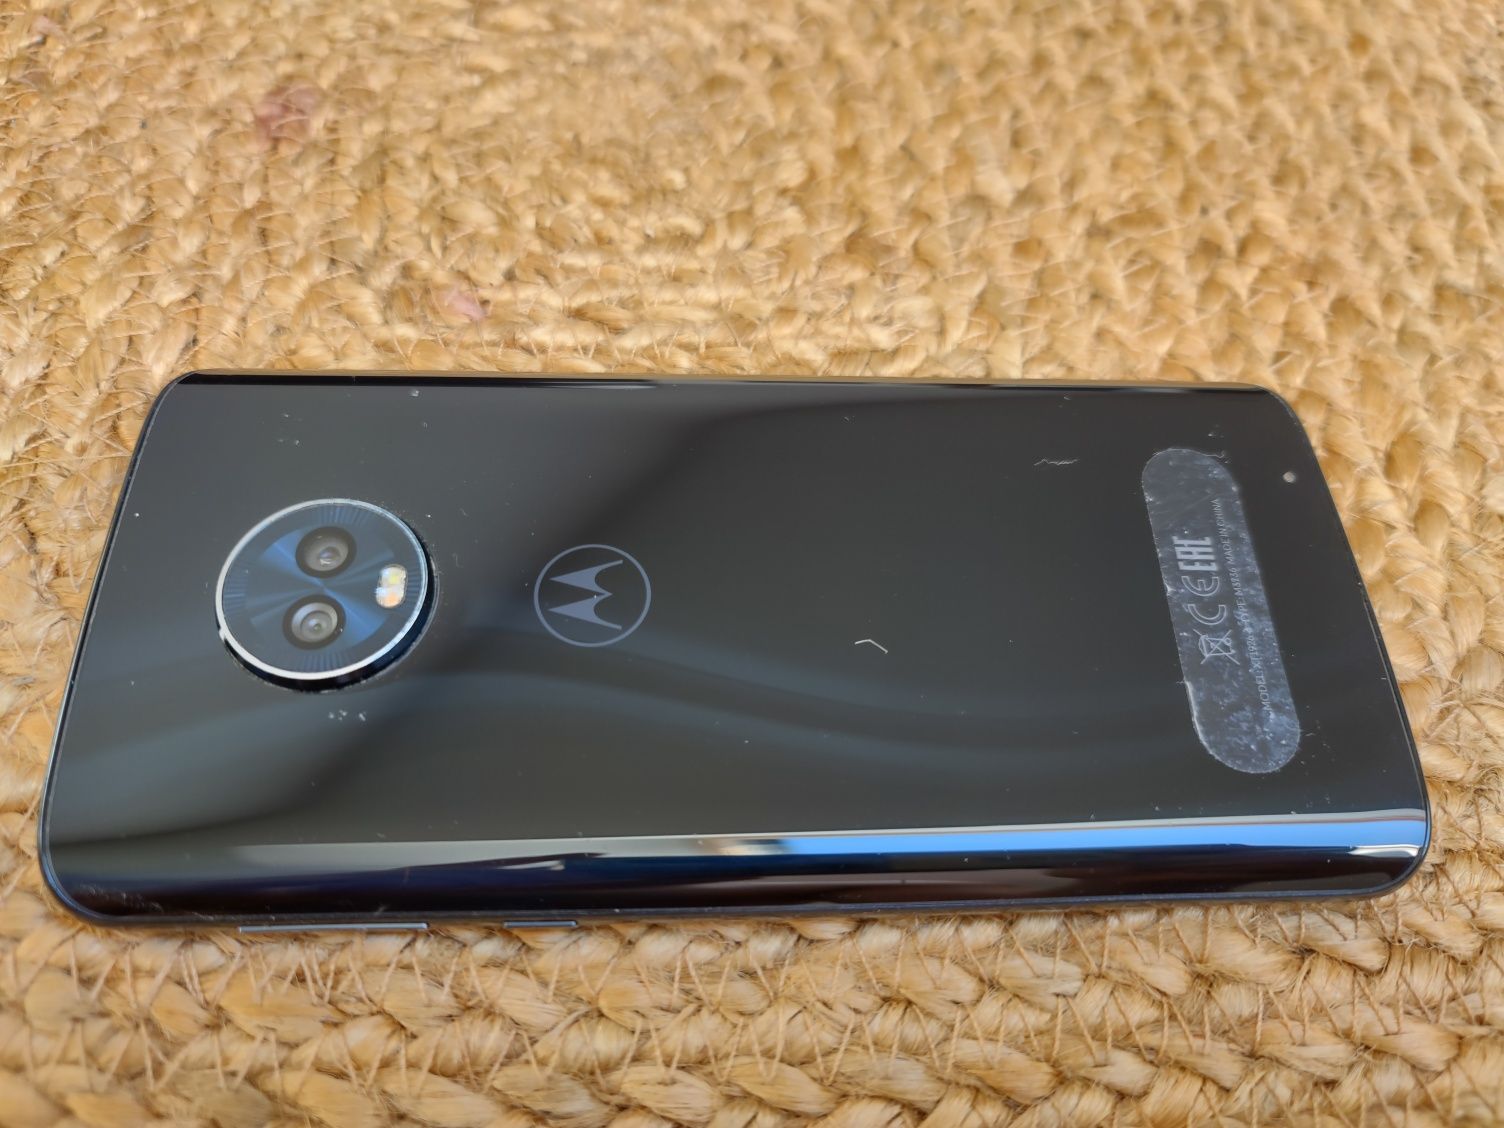 Motorola G6 plus